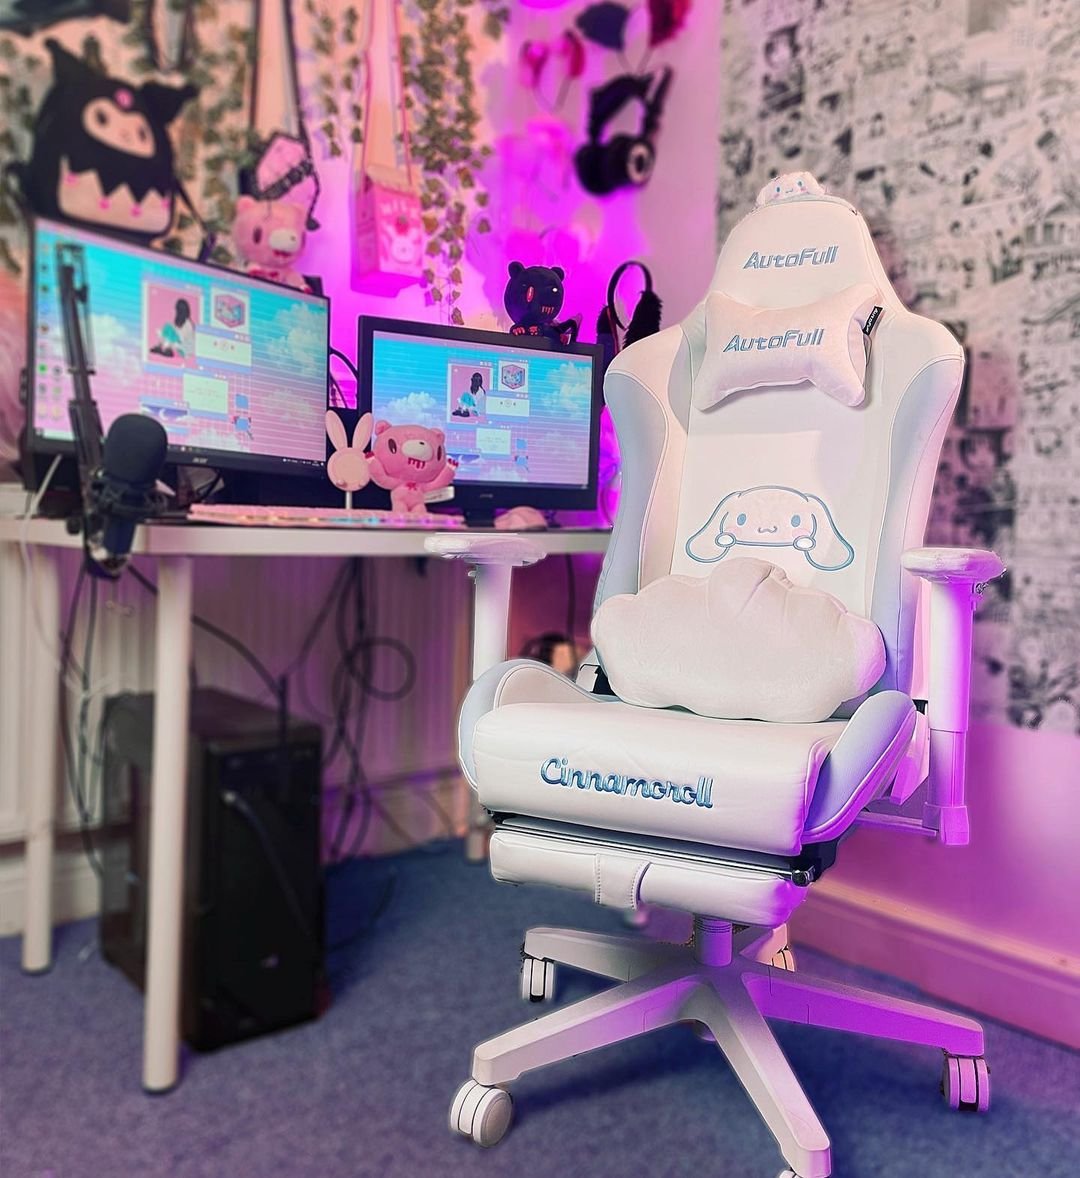 Autofull Gaming Chair - Ergonomic Gaming Office Chair 